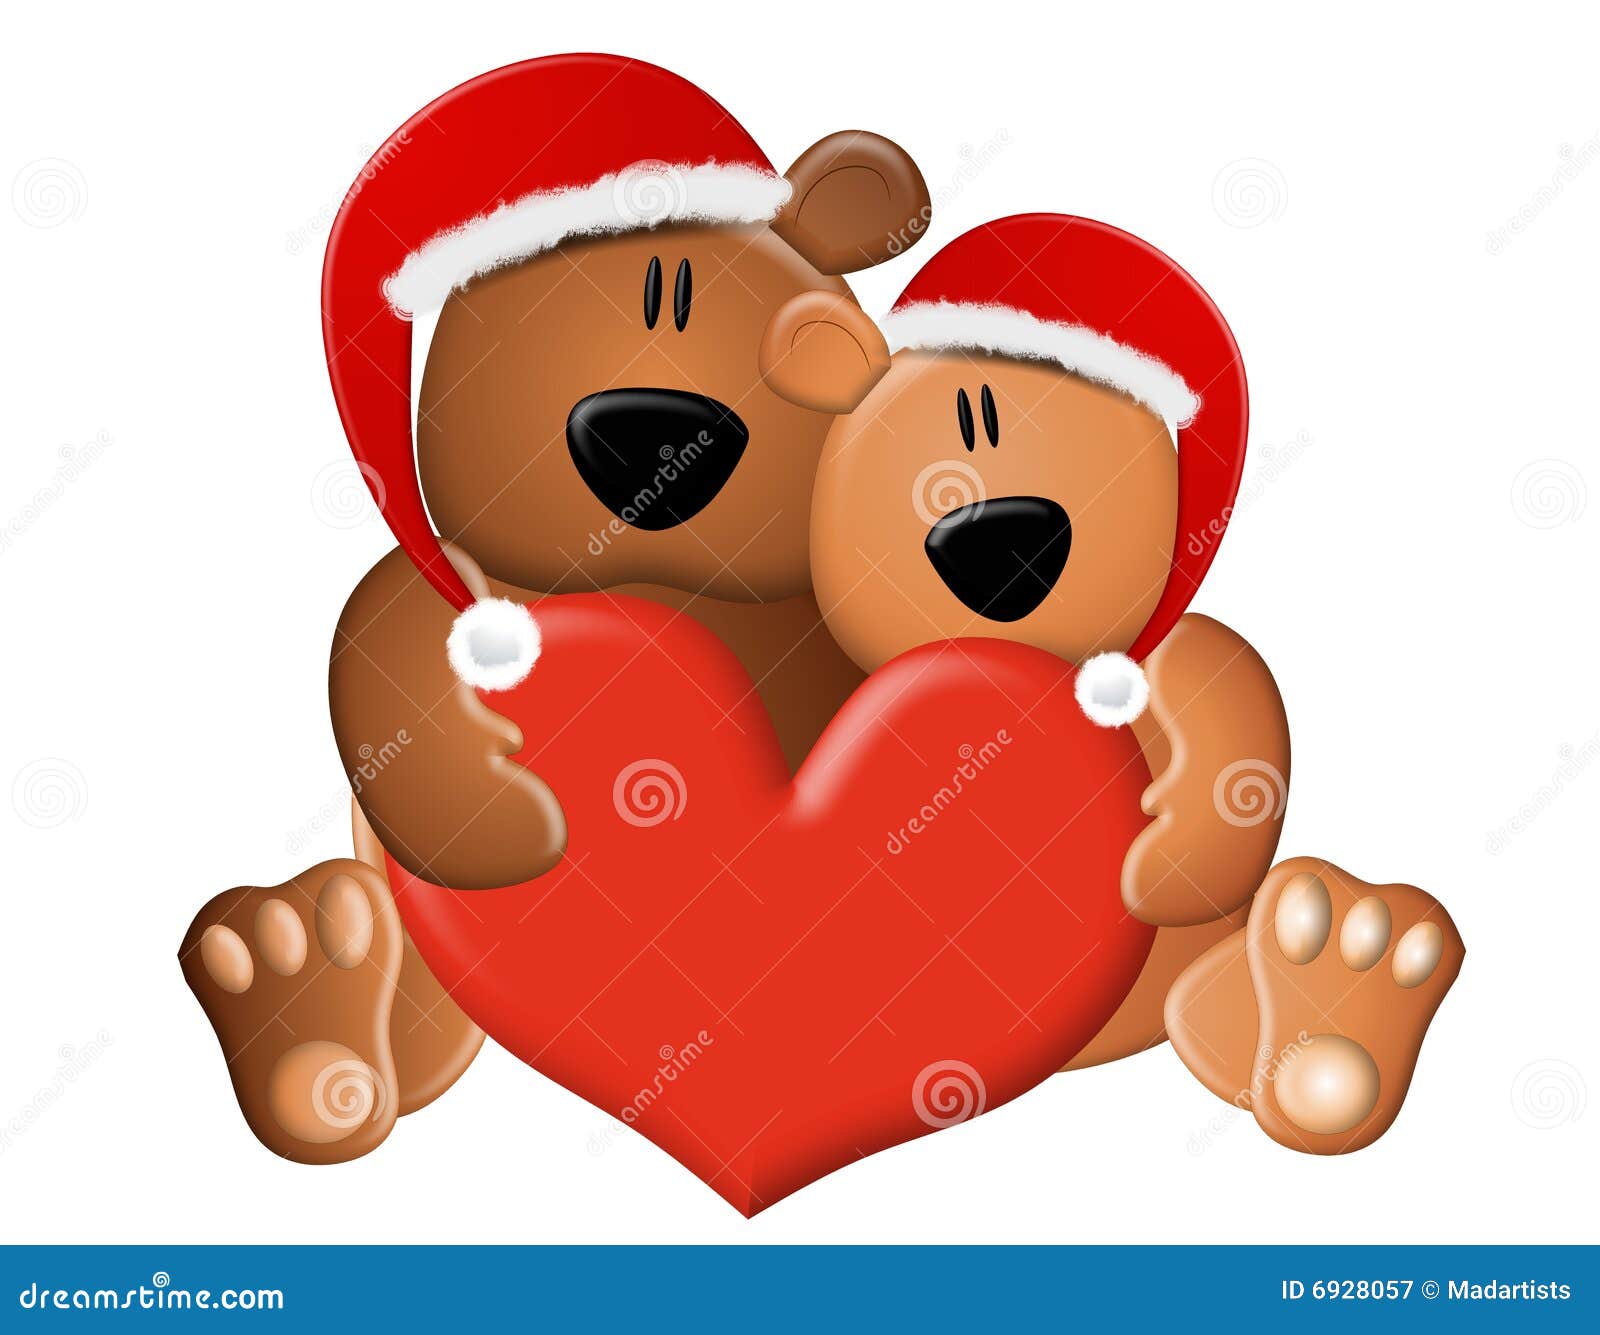 christmas teddy bears clipart - photo #17